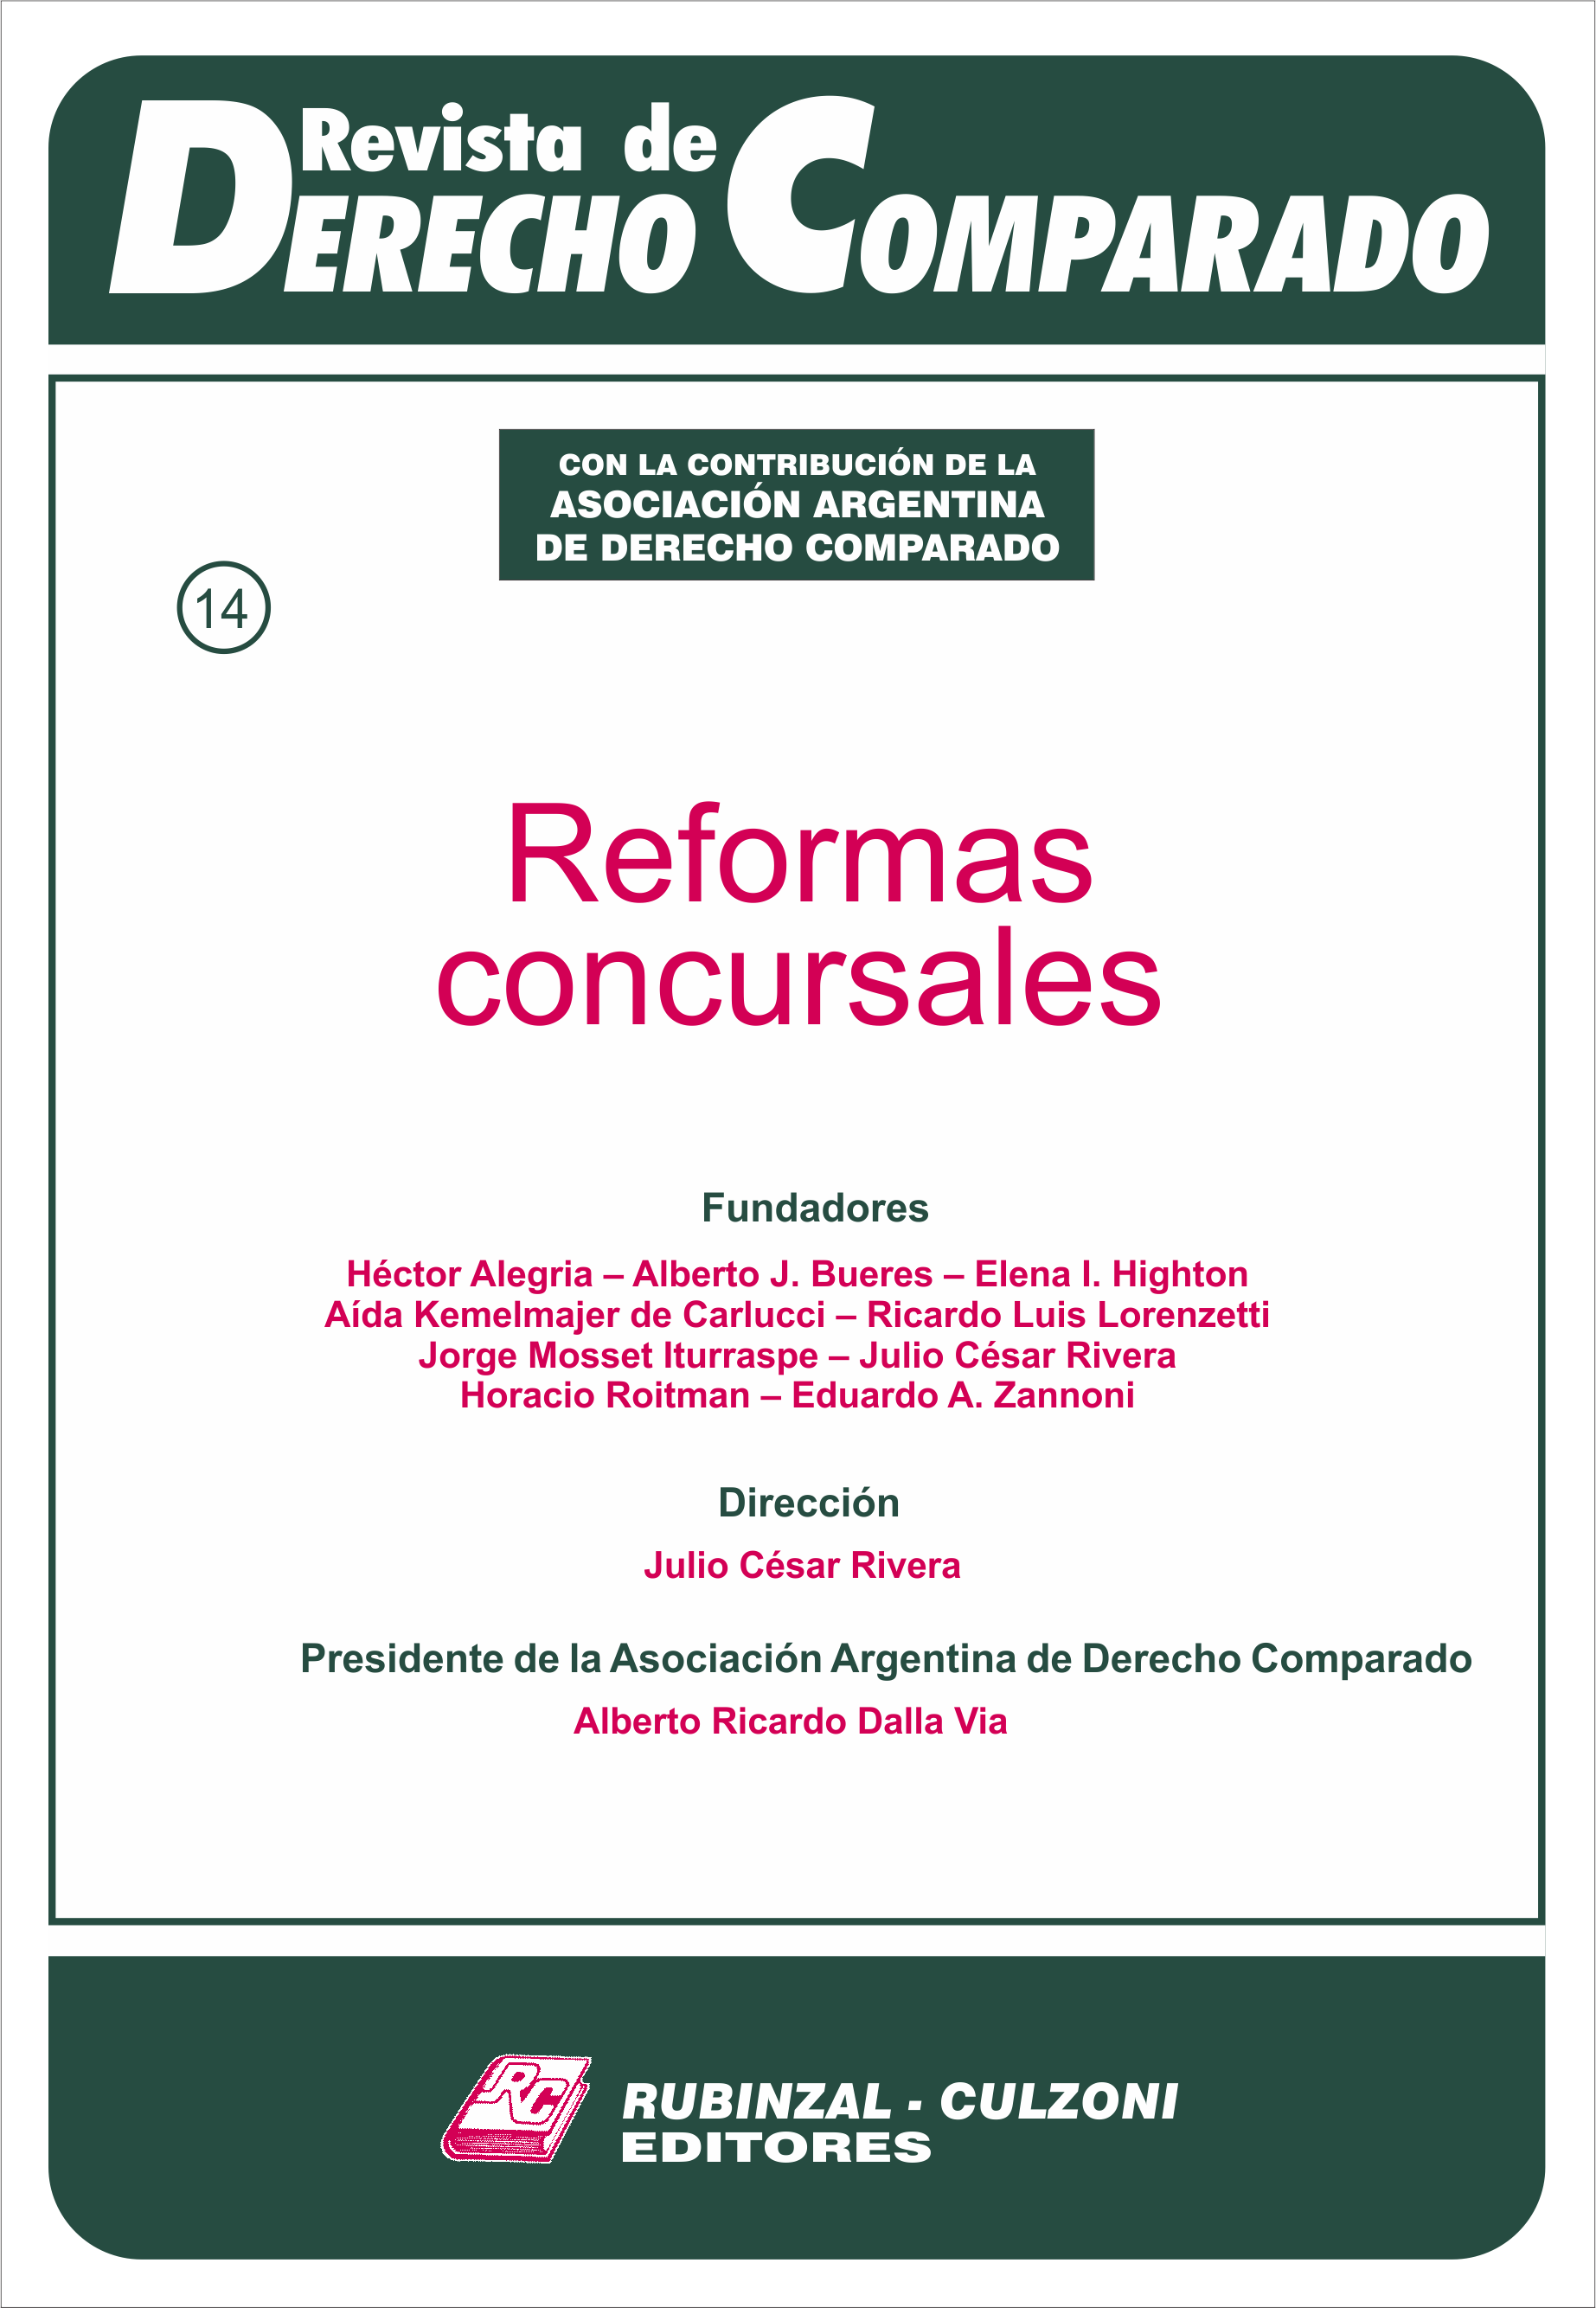 Revista de Derecho Comparado - Reformas concursales.